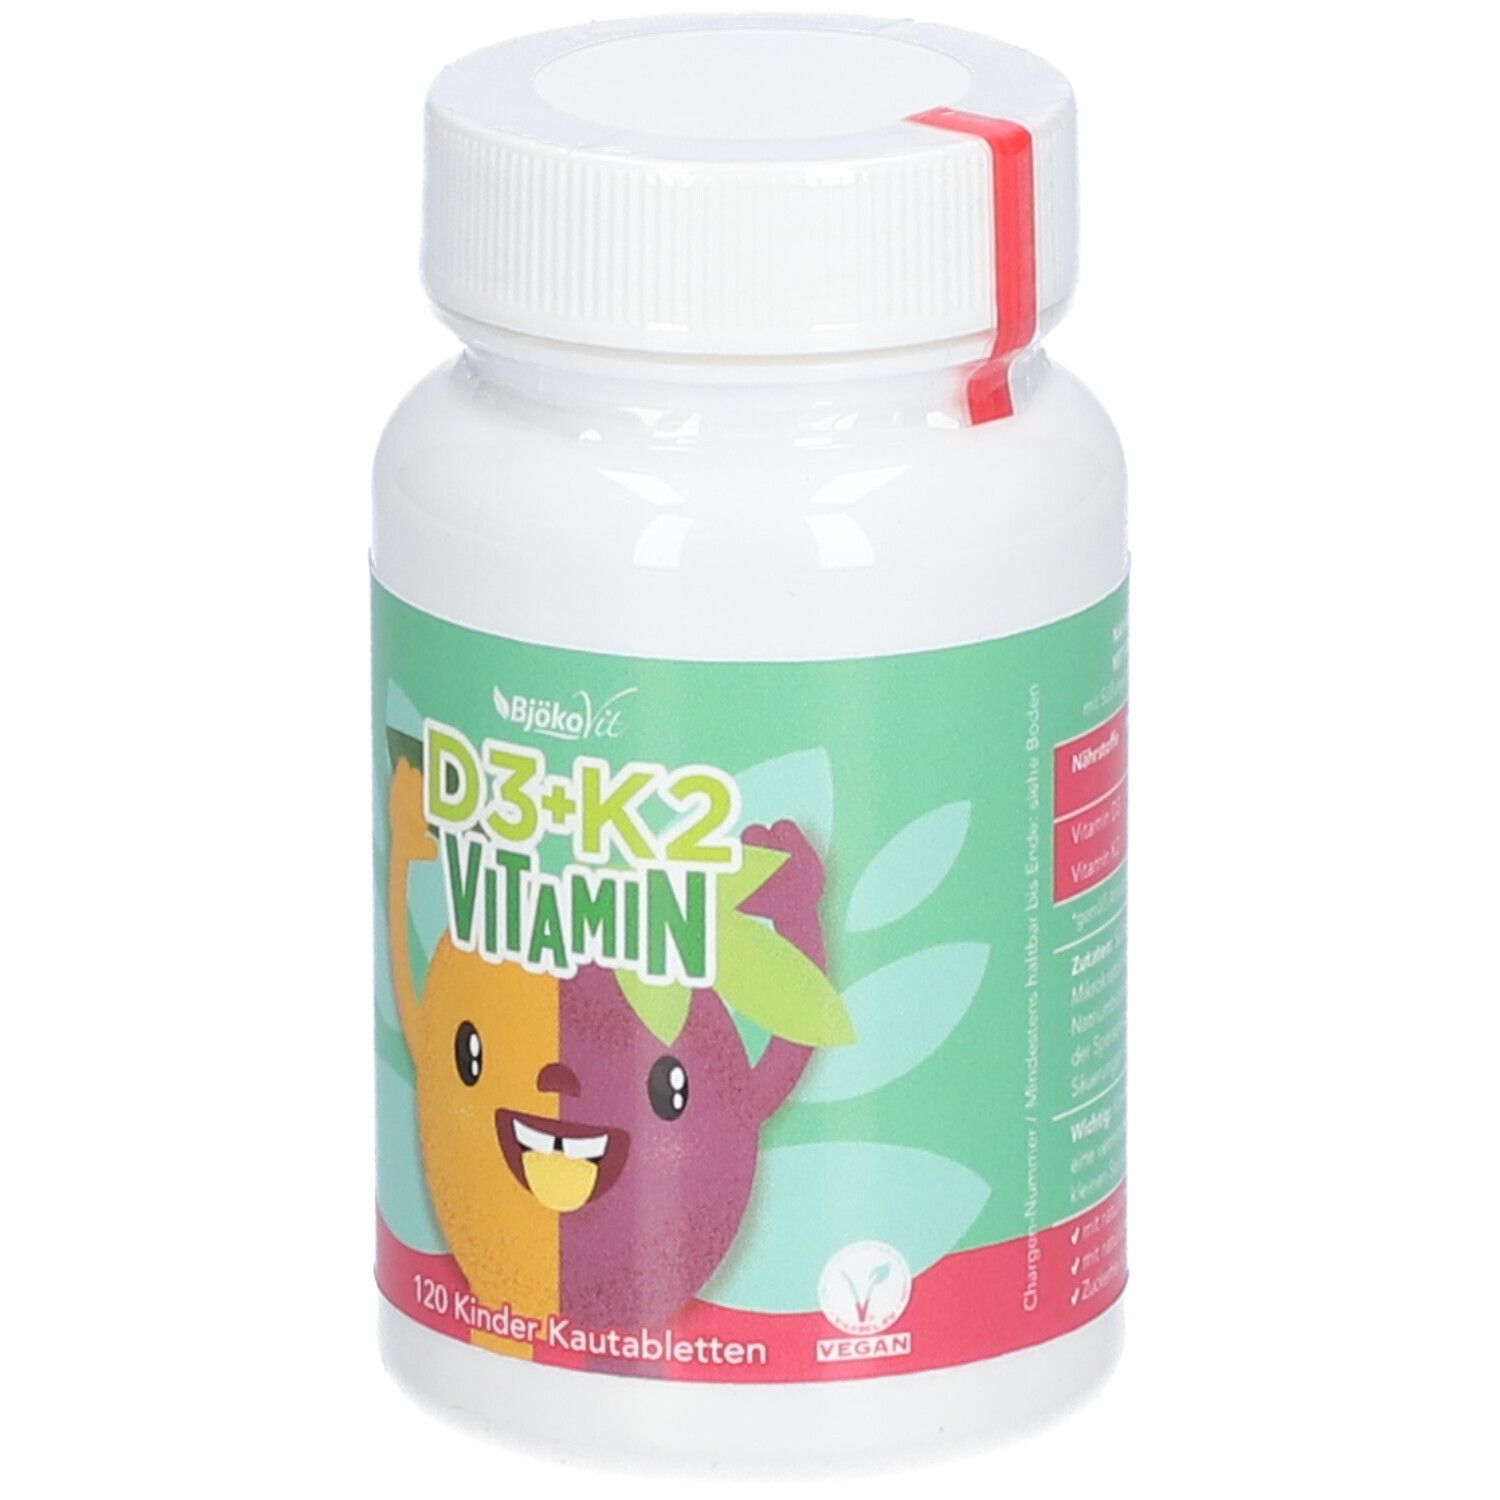 BjökoVit Vitamin D3 + K2 für Kids